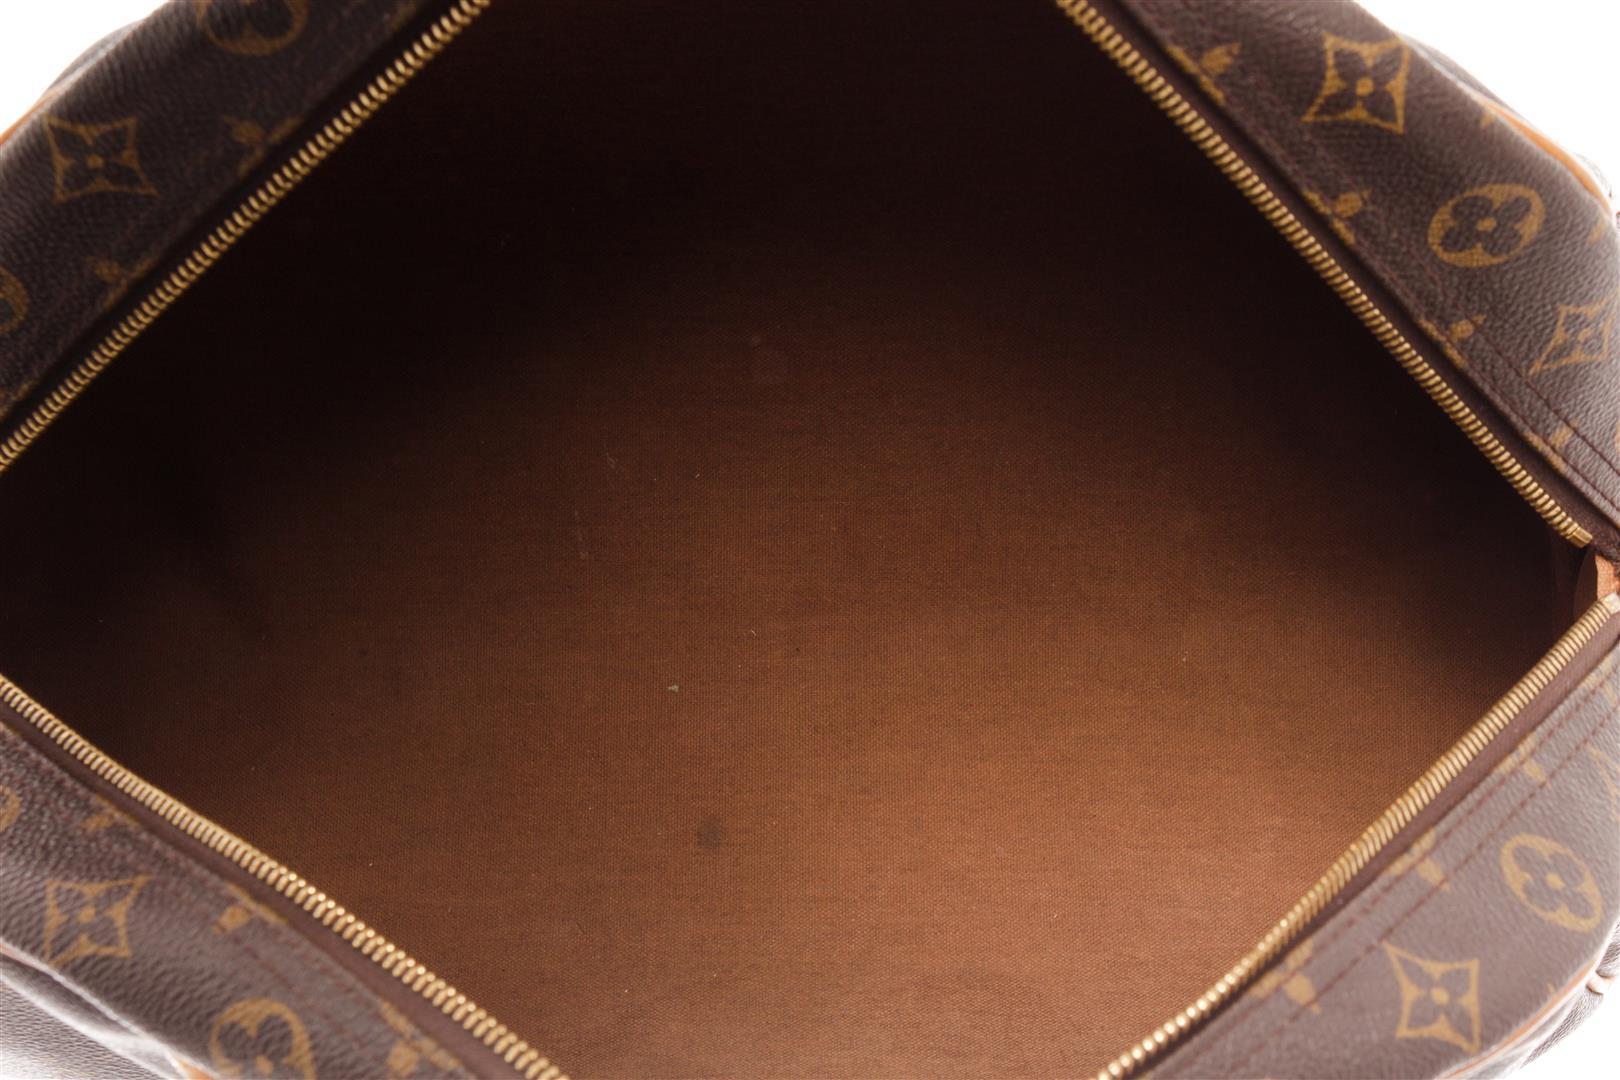 Louis Vuitton Brown Monogram Canvas Leather Montorgueil GM Shoulder Bag